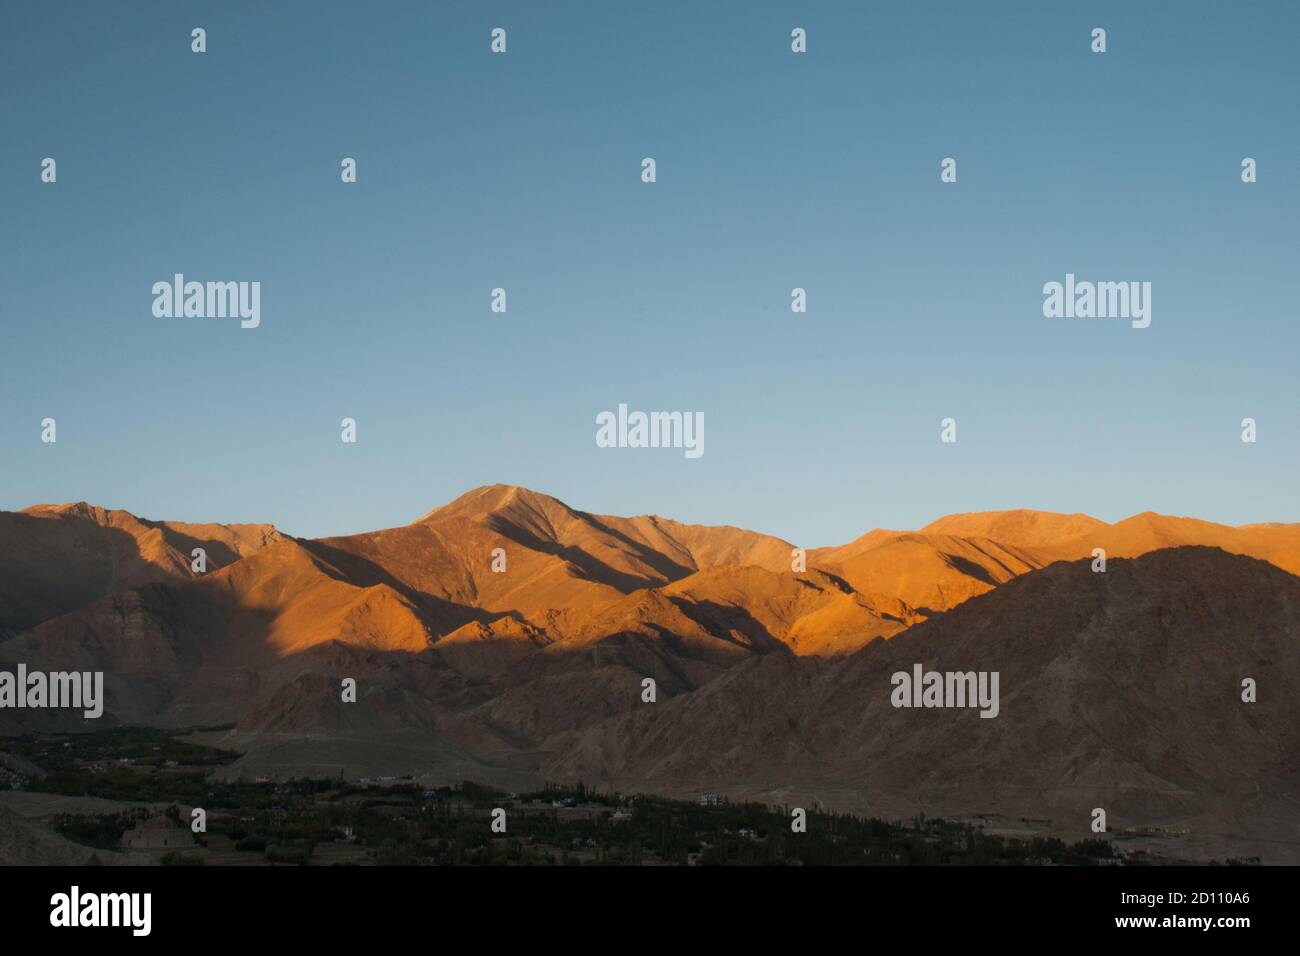 sunset and landscape at ladakh j&k india Stock Photo